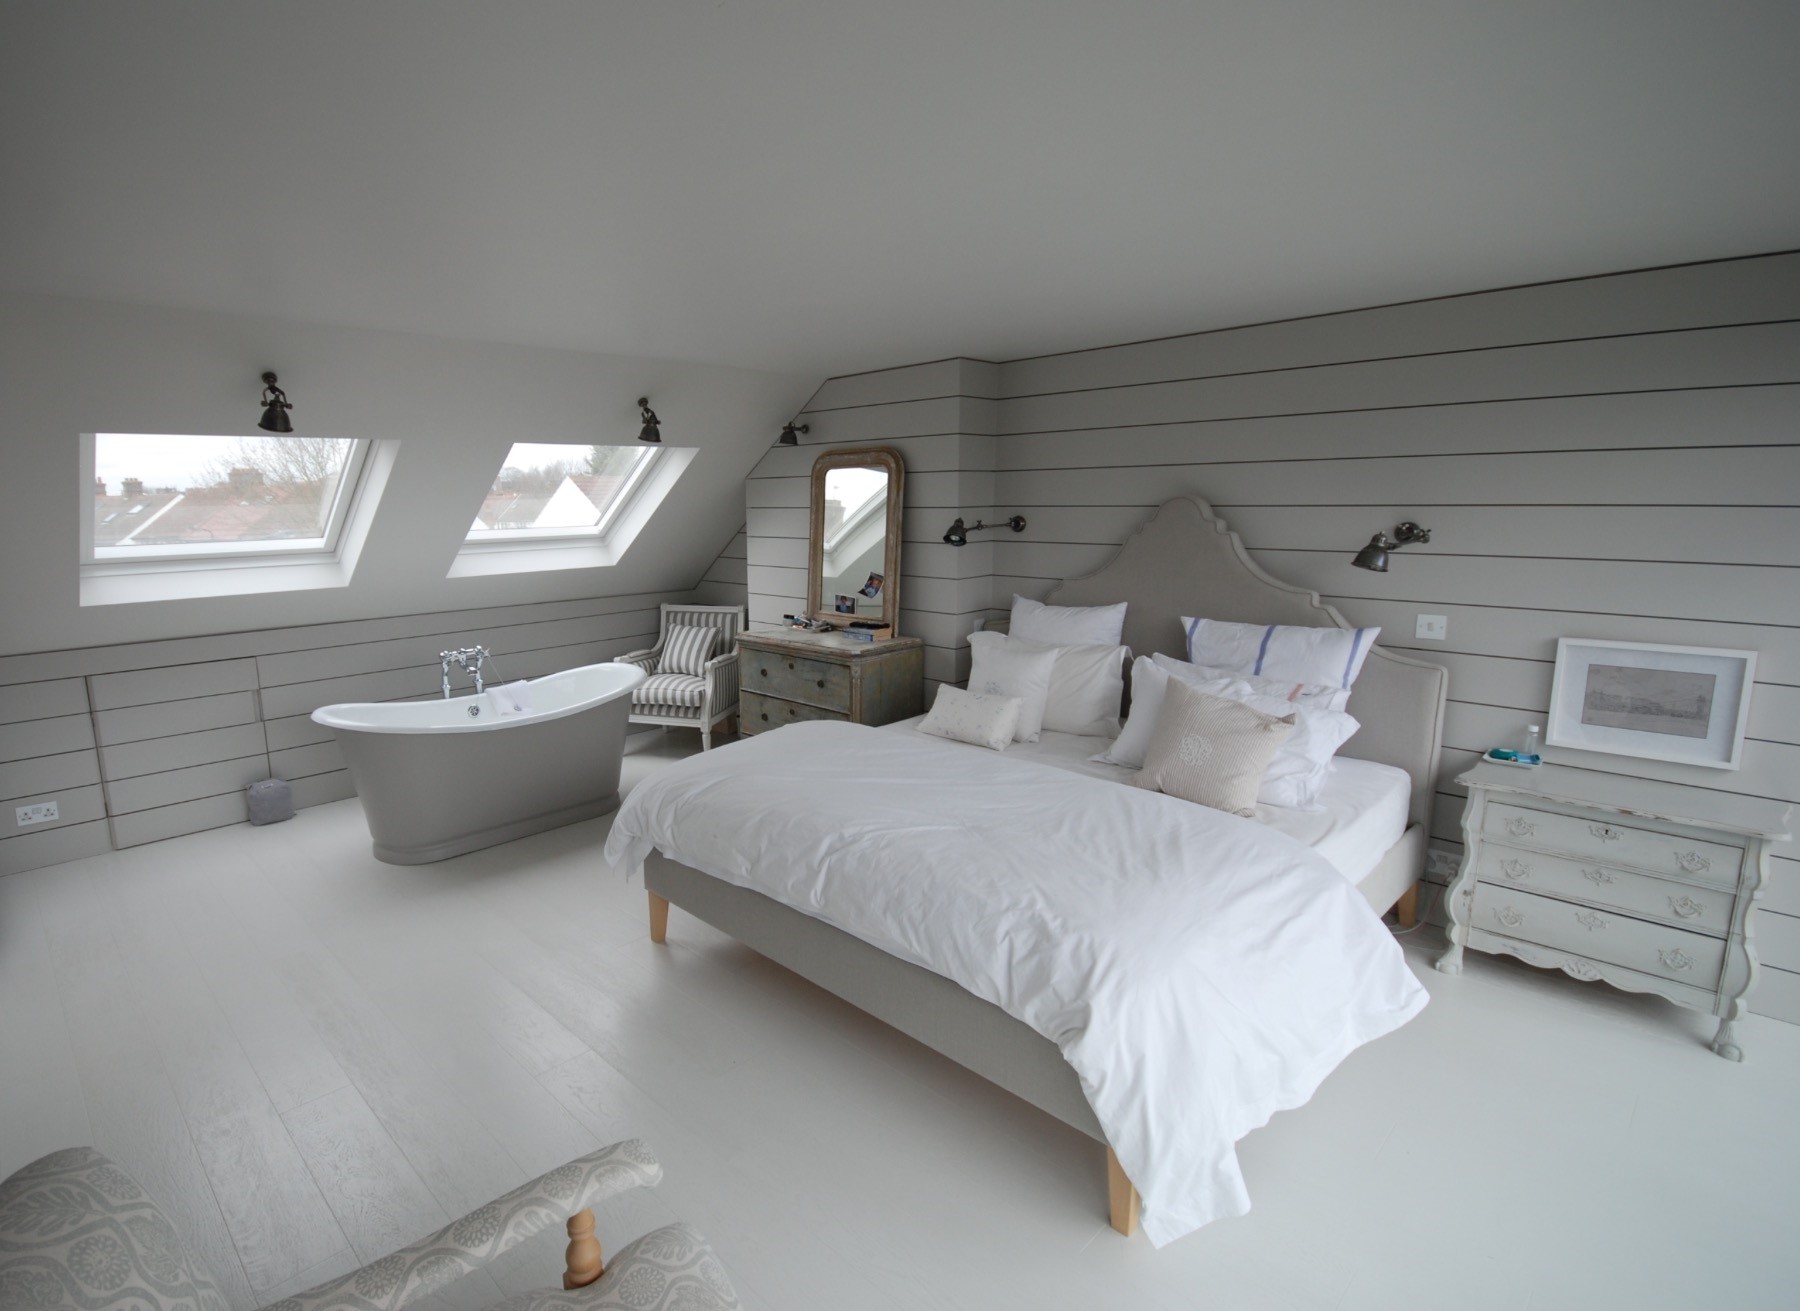 Un dormitorio abuhardillado minimalista con baño